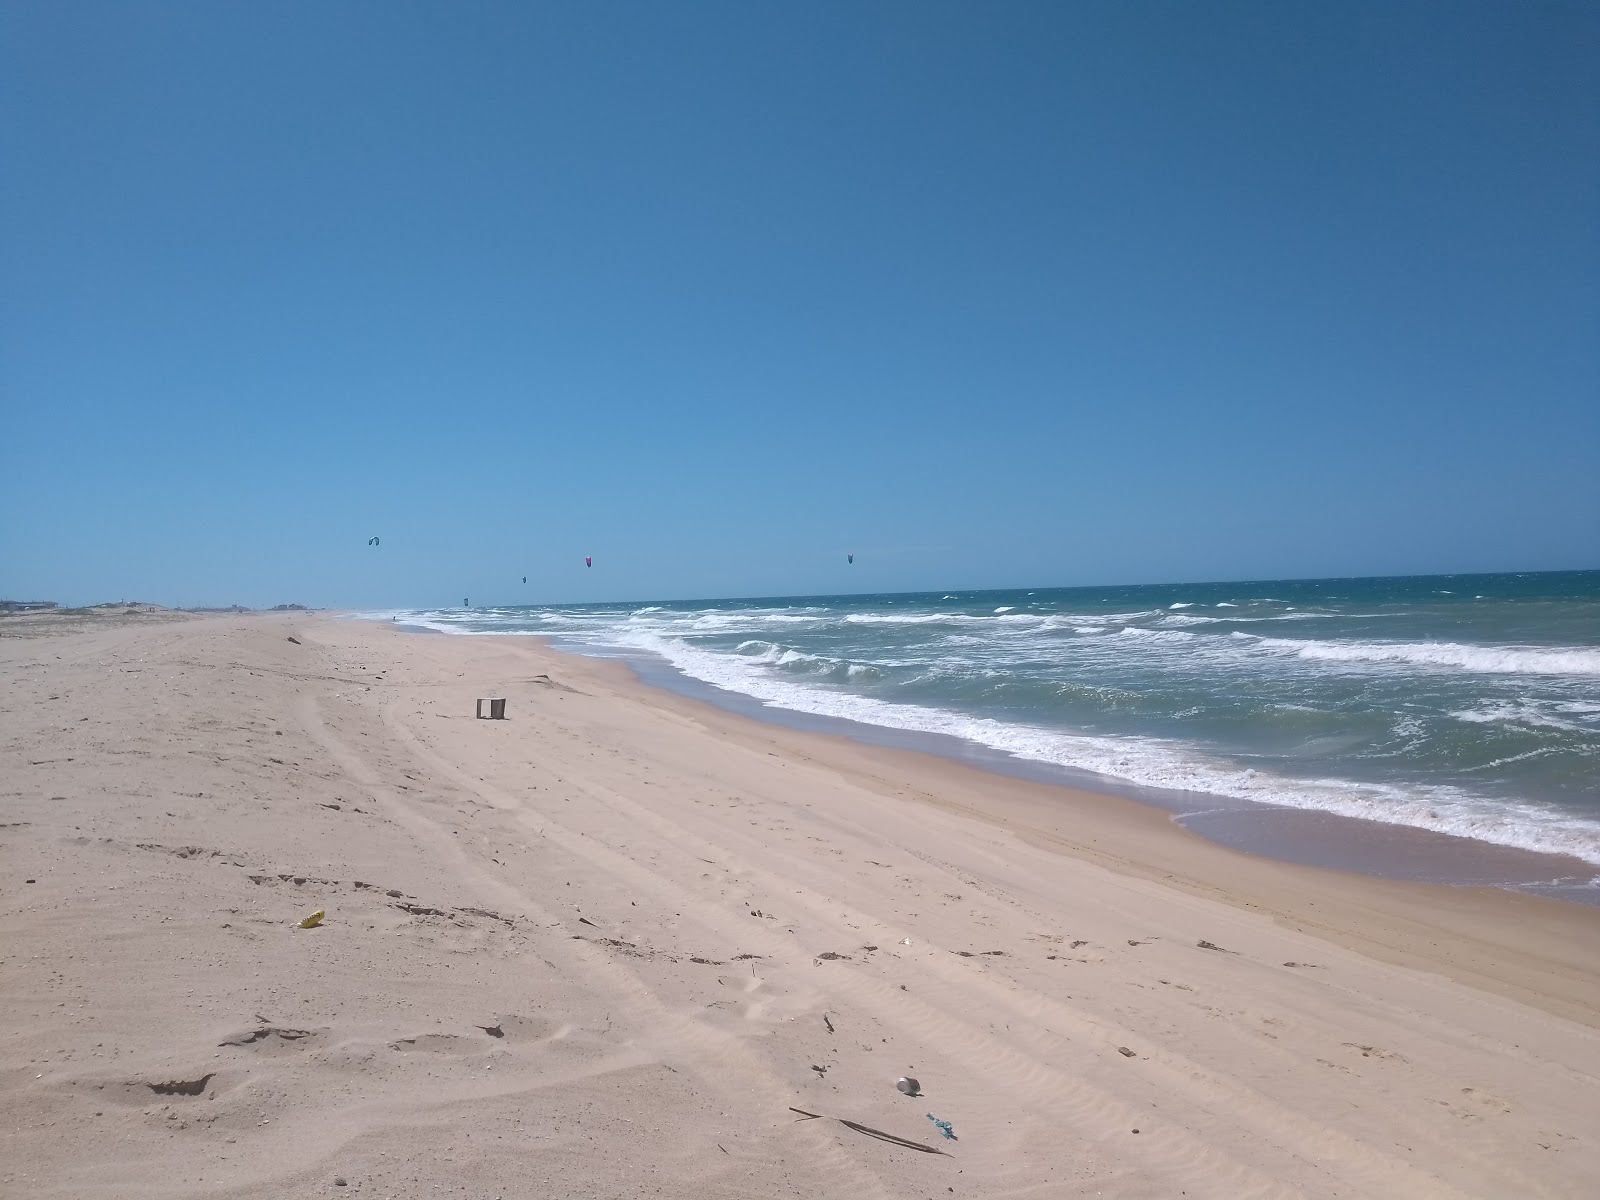 Foto af Praia do Taiba - populært sted blandt afslapningskendere